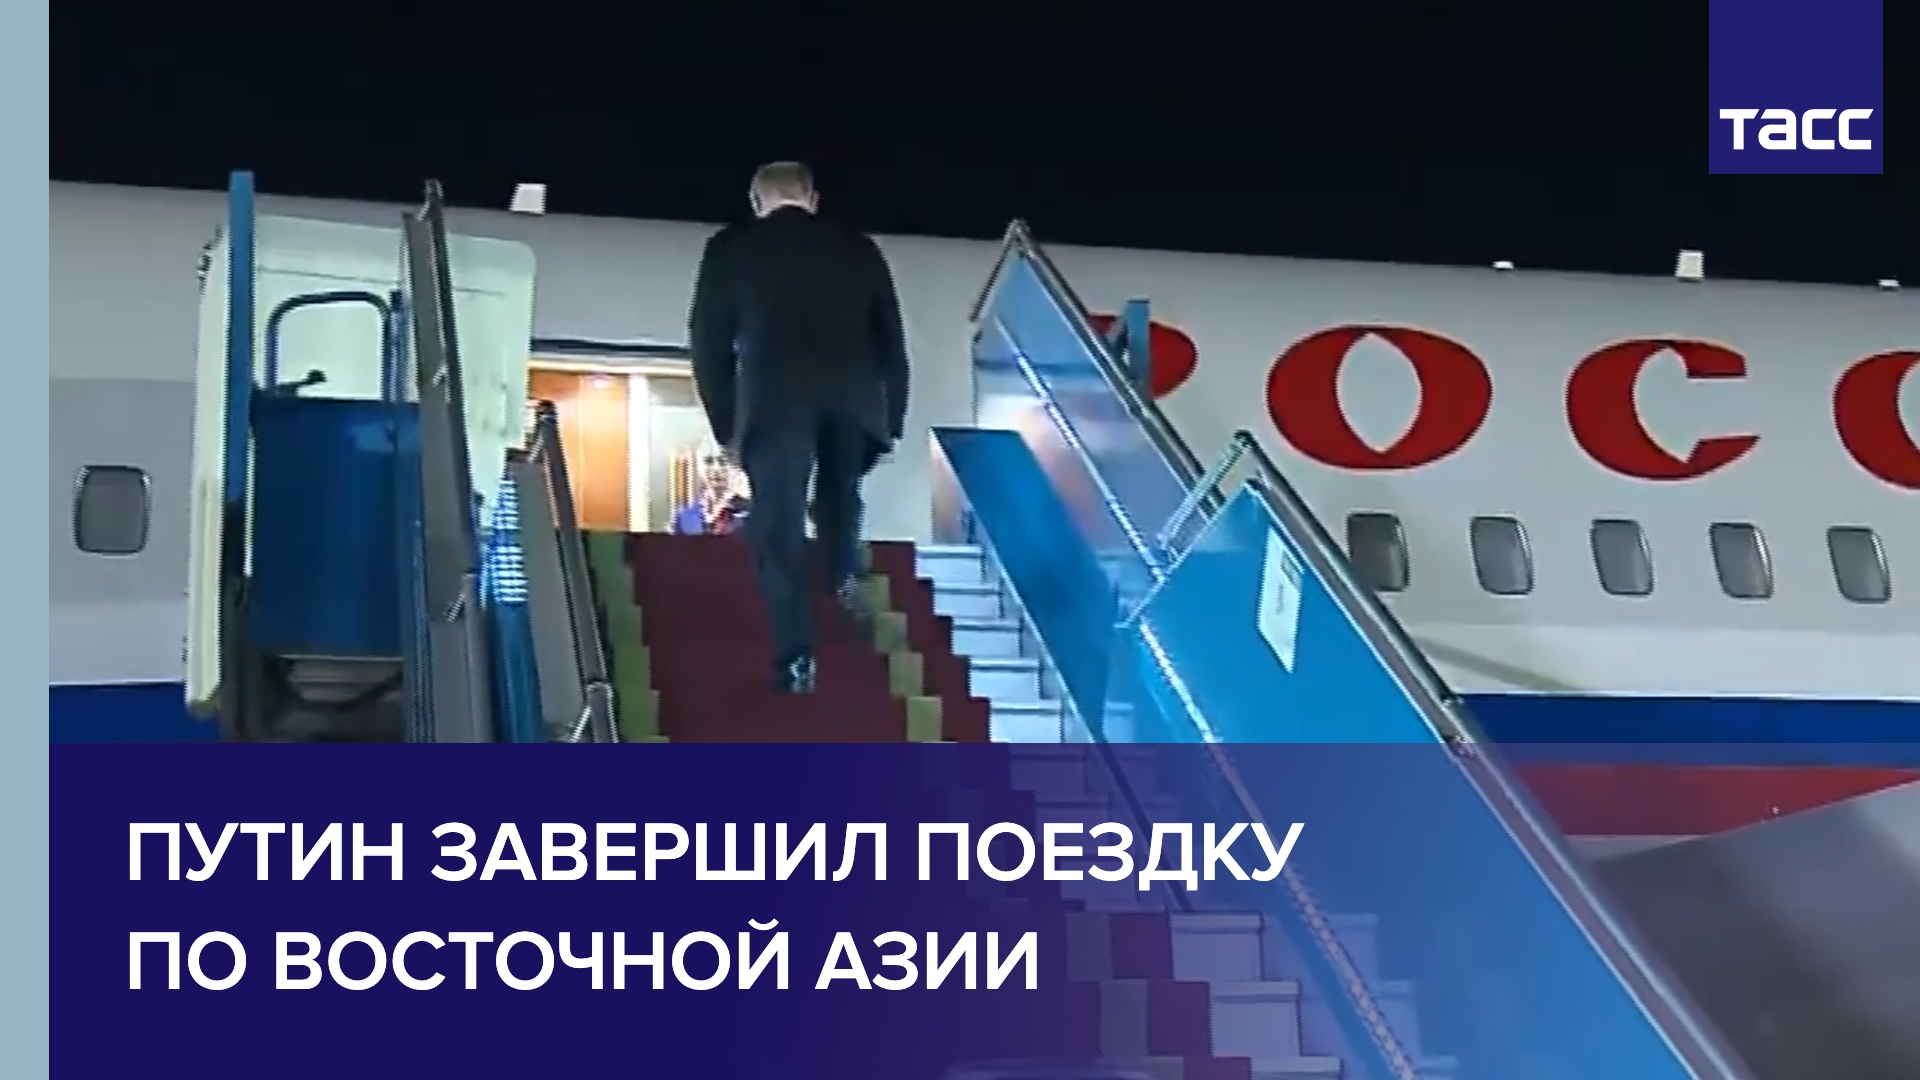 Путин покидает Вьетнам после государственного визита